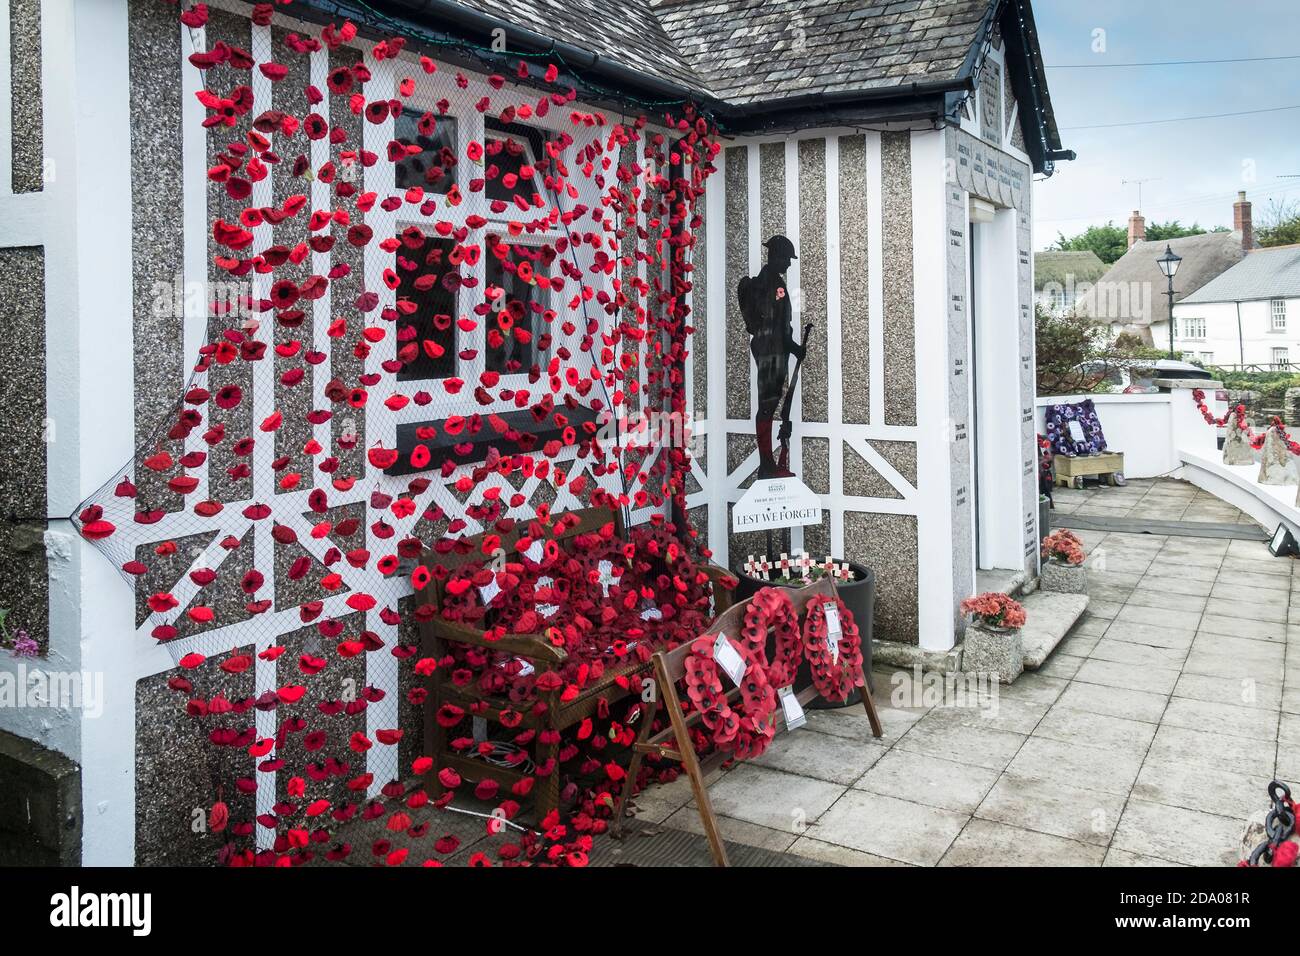 Recordar juntos para recordar. Una exhibición de Crantock WI y Arty/Crafty Group en Crantock Village en Cornwall. Foto de stock